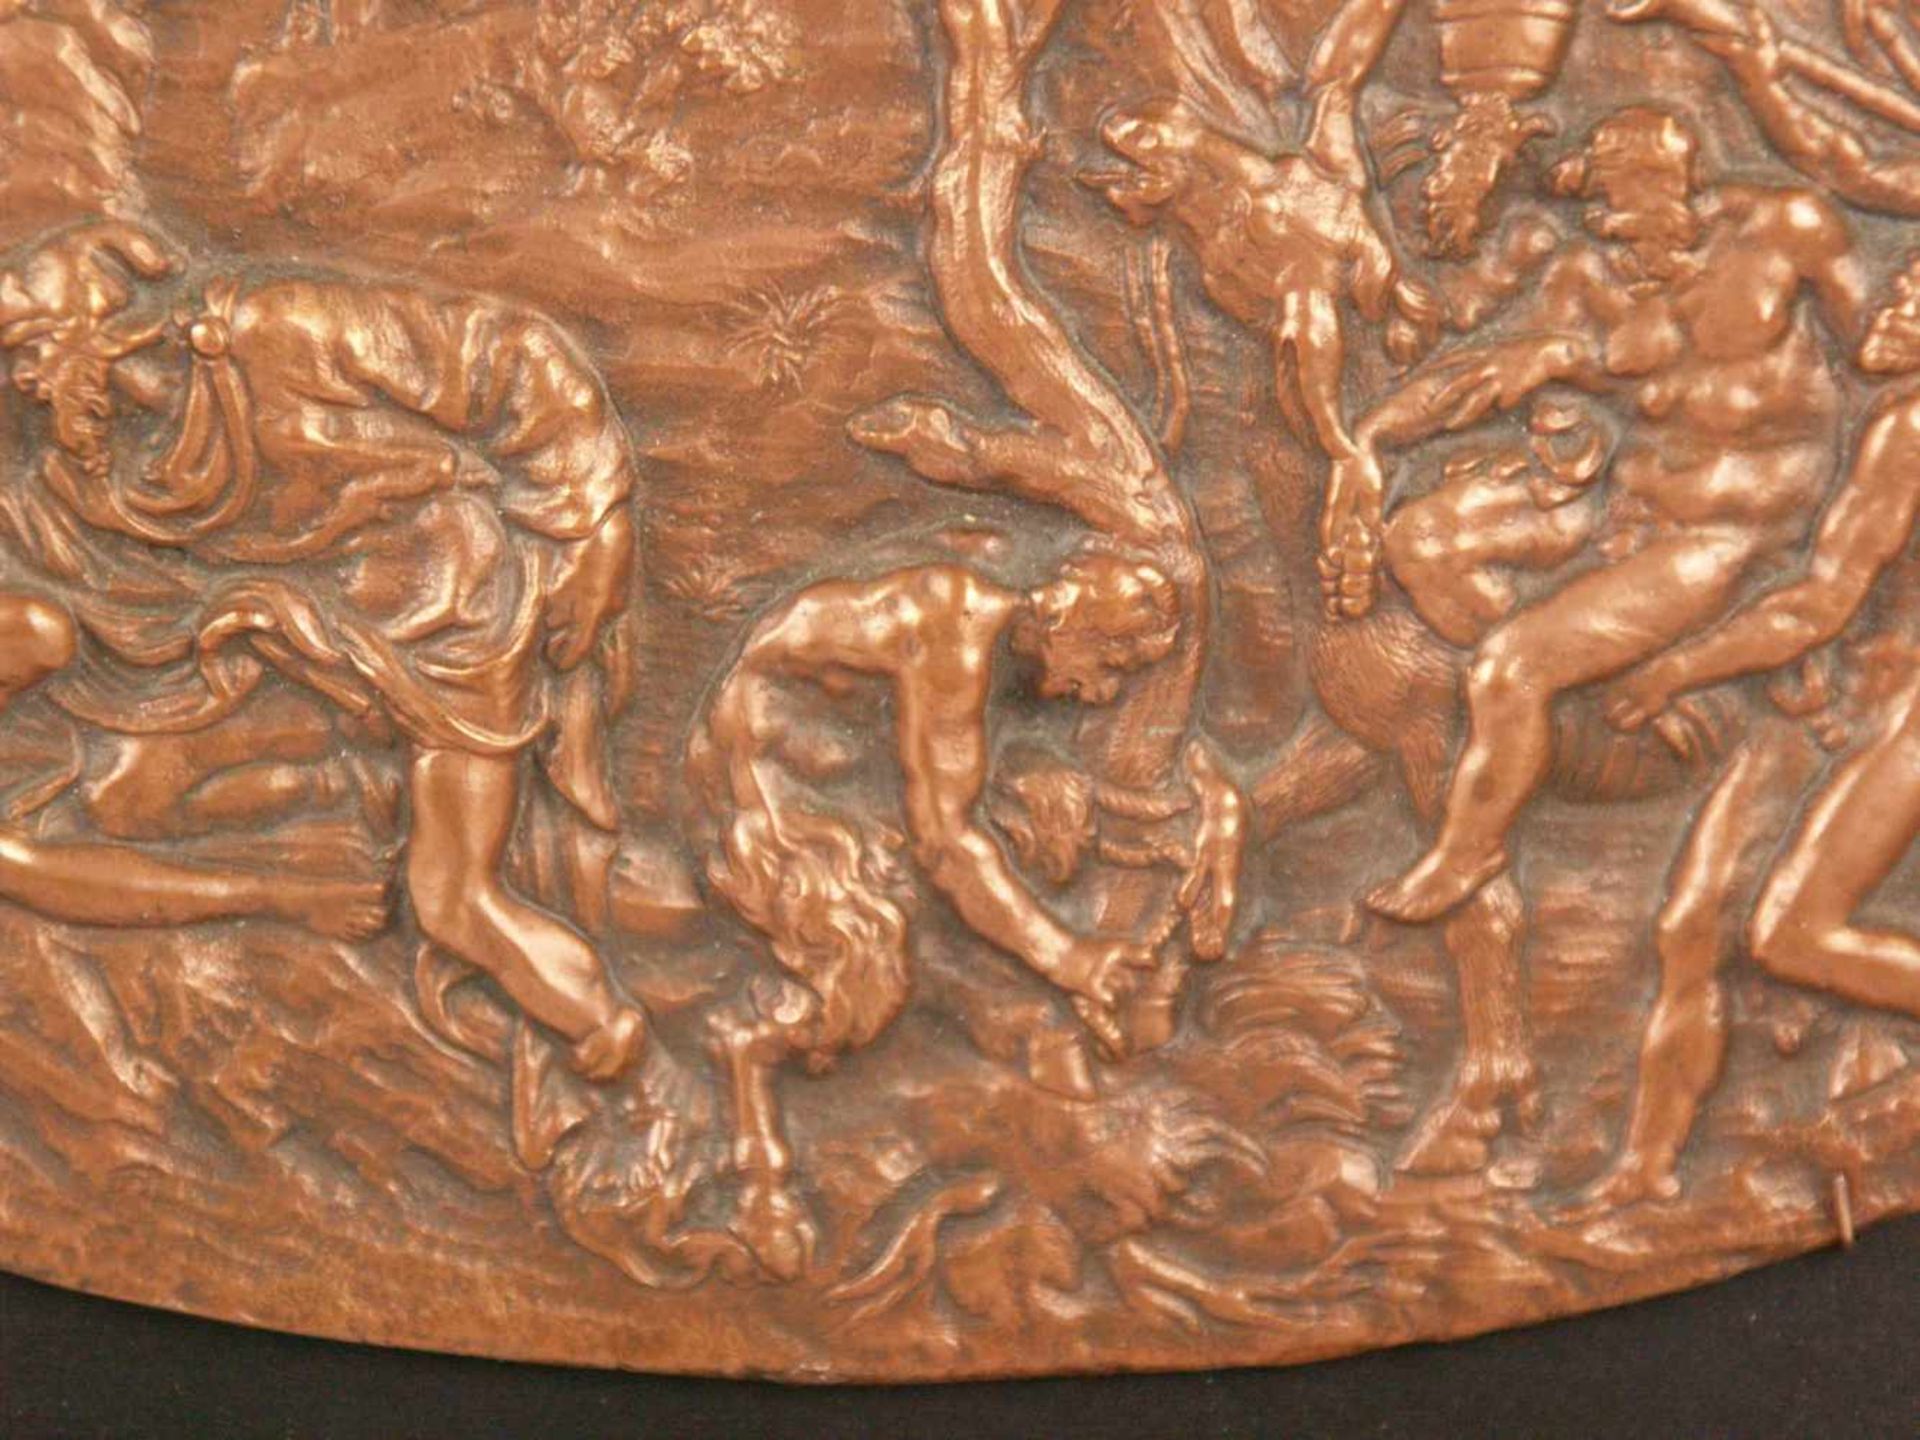 Ovale Reliefplakette "Bacchanal" - Kupfer bzw. Kupferbronze,aus mehreren Einzelszenen komponiertes - Bild 5 aus 5